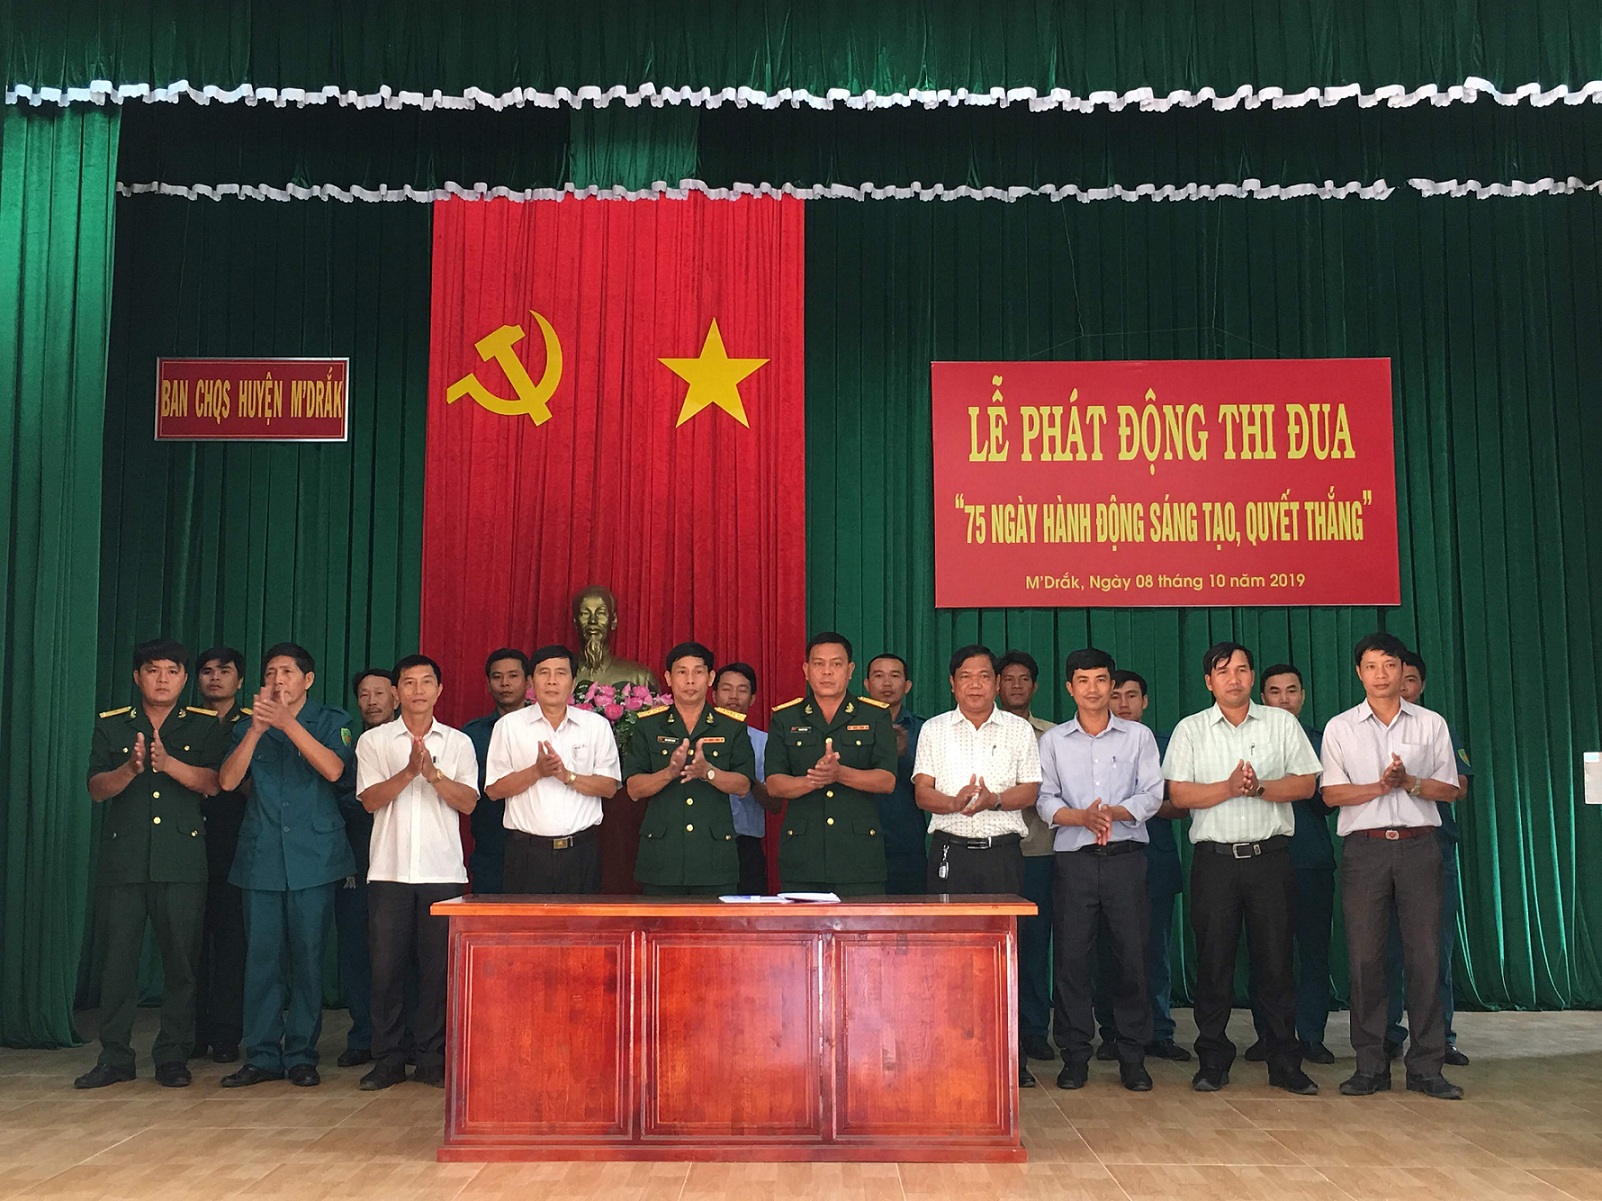 Ban Chỉ huy Quân sự huyện M'Drắk tổ chức Lễ phát động thi đua cao điểm "75 ngày hành động sáng tạo quyết thắng"